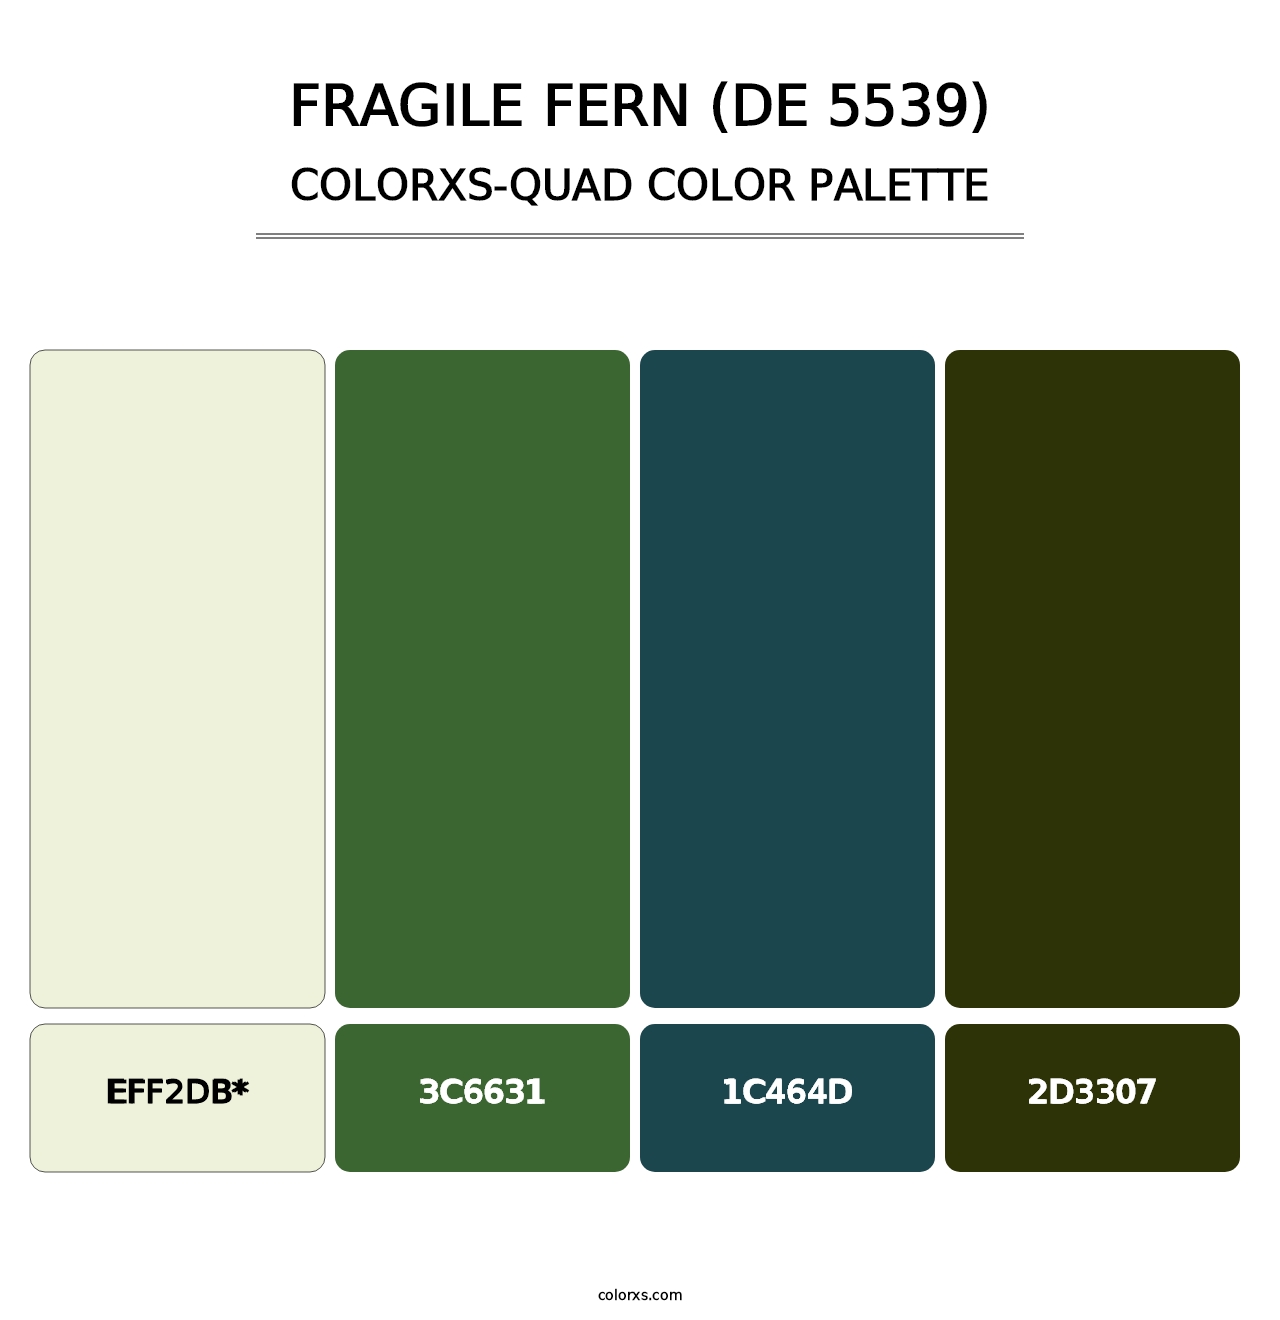 Fragile Fern (DE 5539) - Colorxs Quad Palette